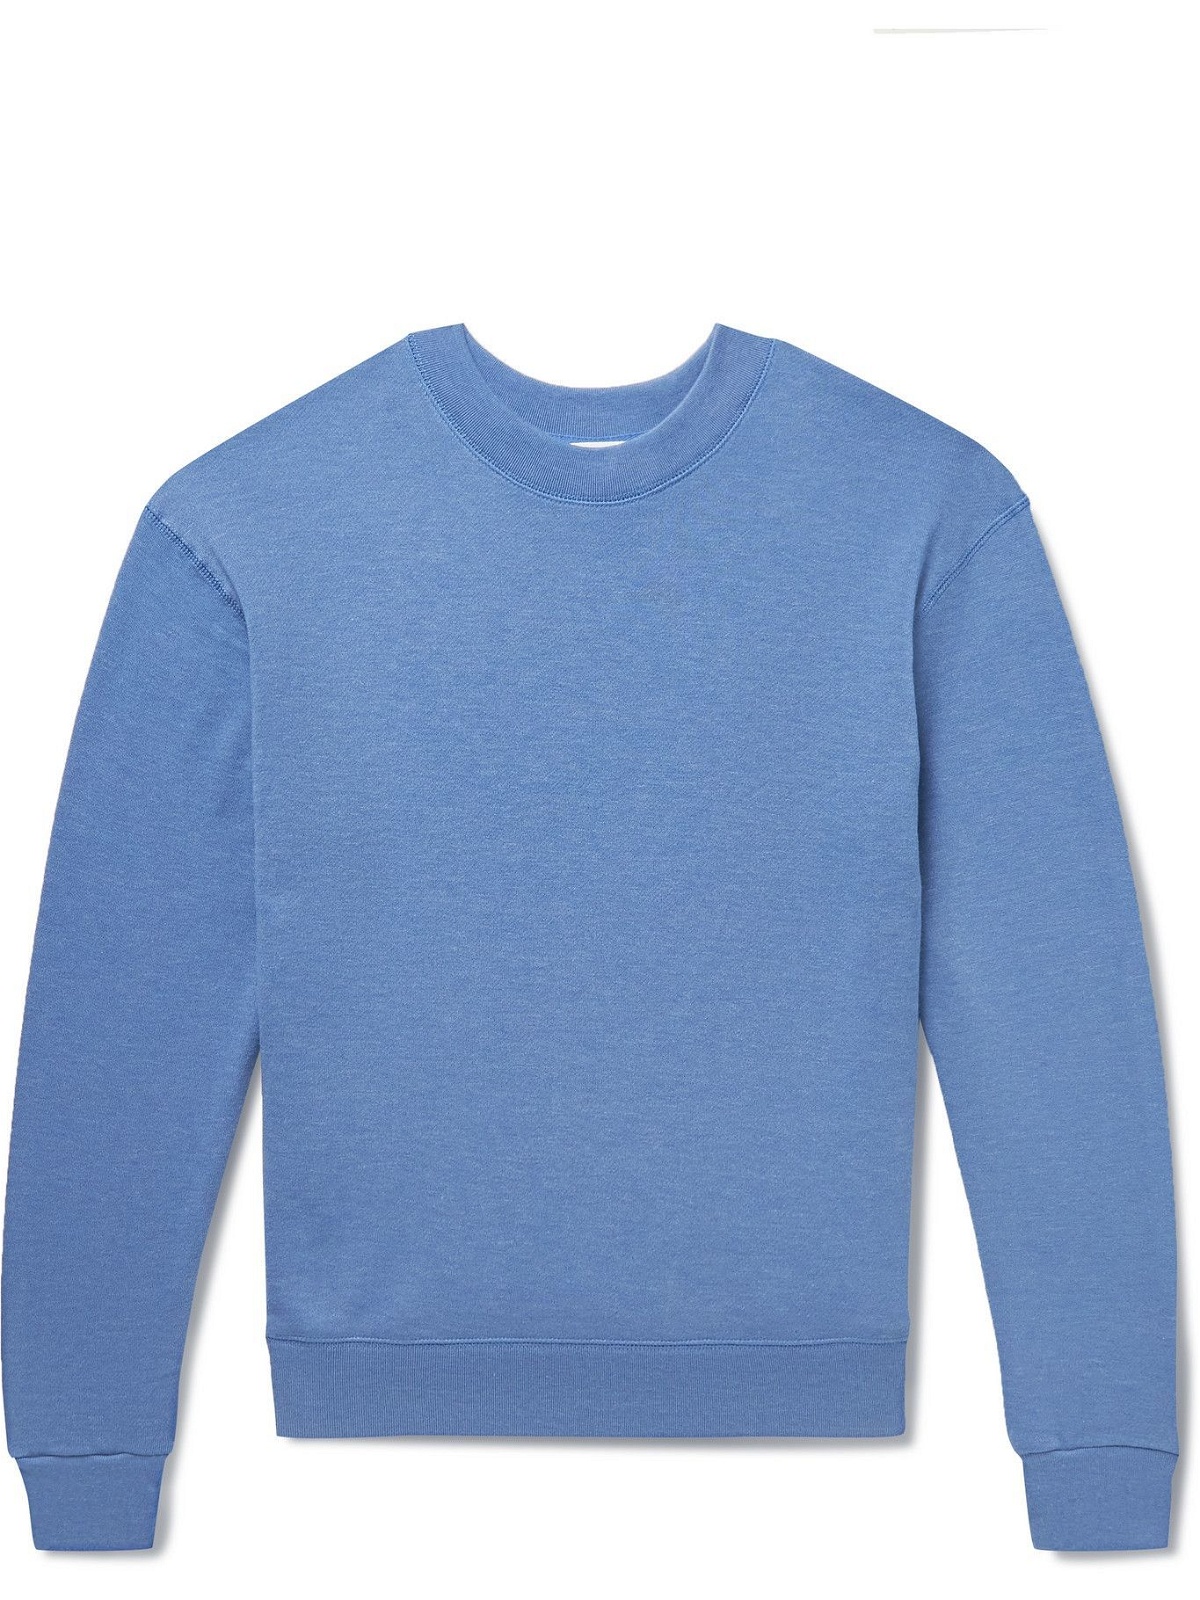 Entireworld - Cotton-Blend Jersey Sweatshirt - Blue Entireworld